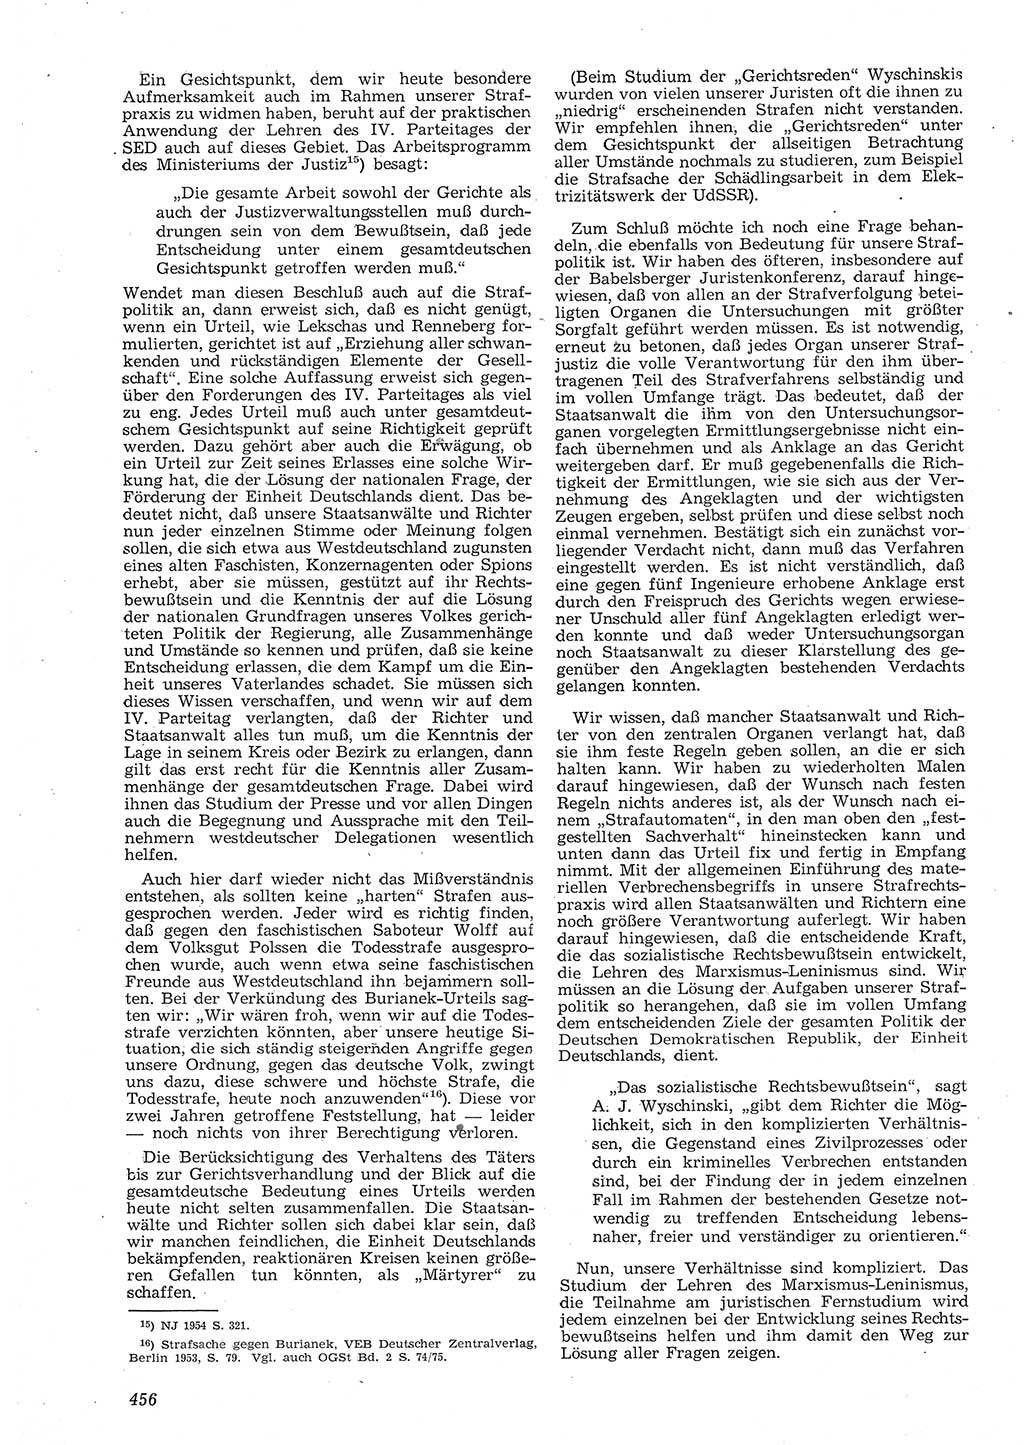 Neue Justiz (NJ), Zeitschrift für Recht und Rechtswissenschaft [Deutsche Demokratische Republik (DDR)], 8. Jahrgang 1954, Seite 456 (NJ DDR 1954, S. 456)